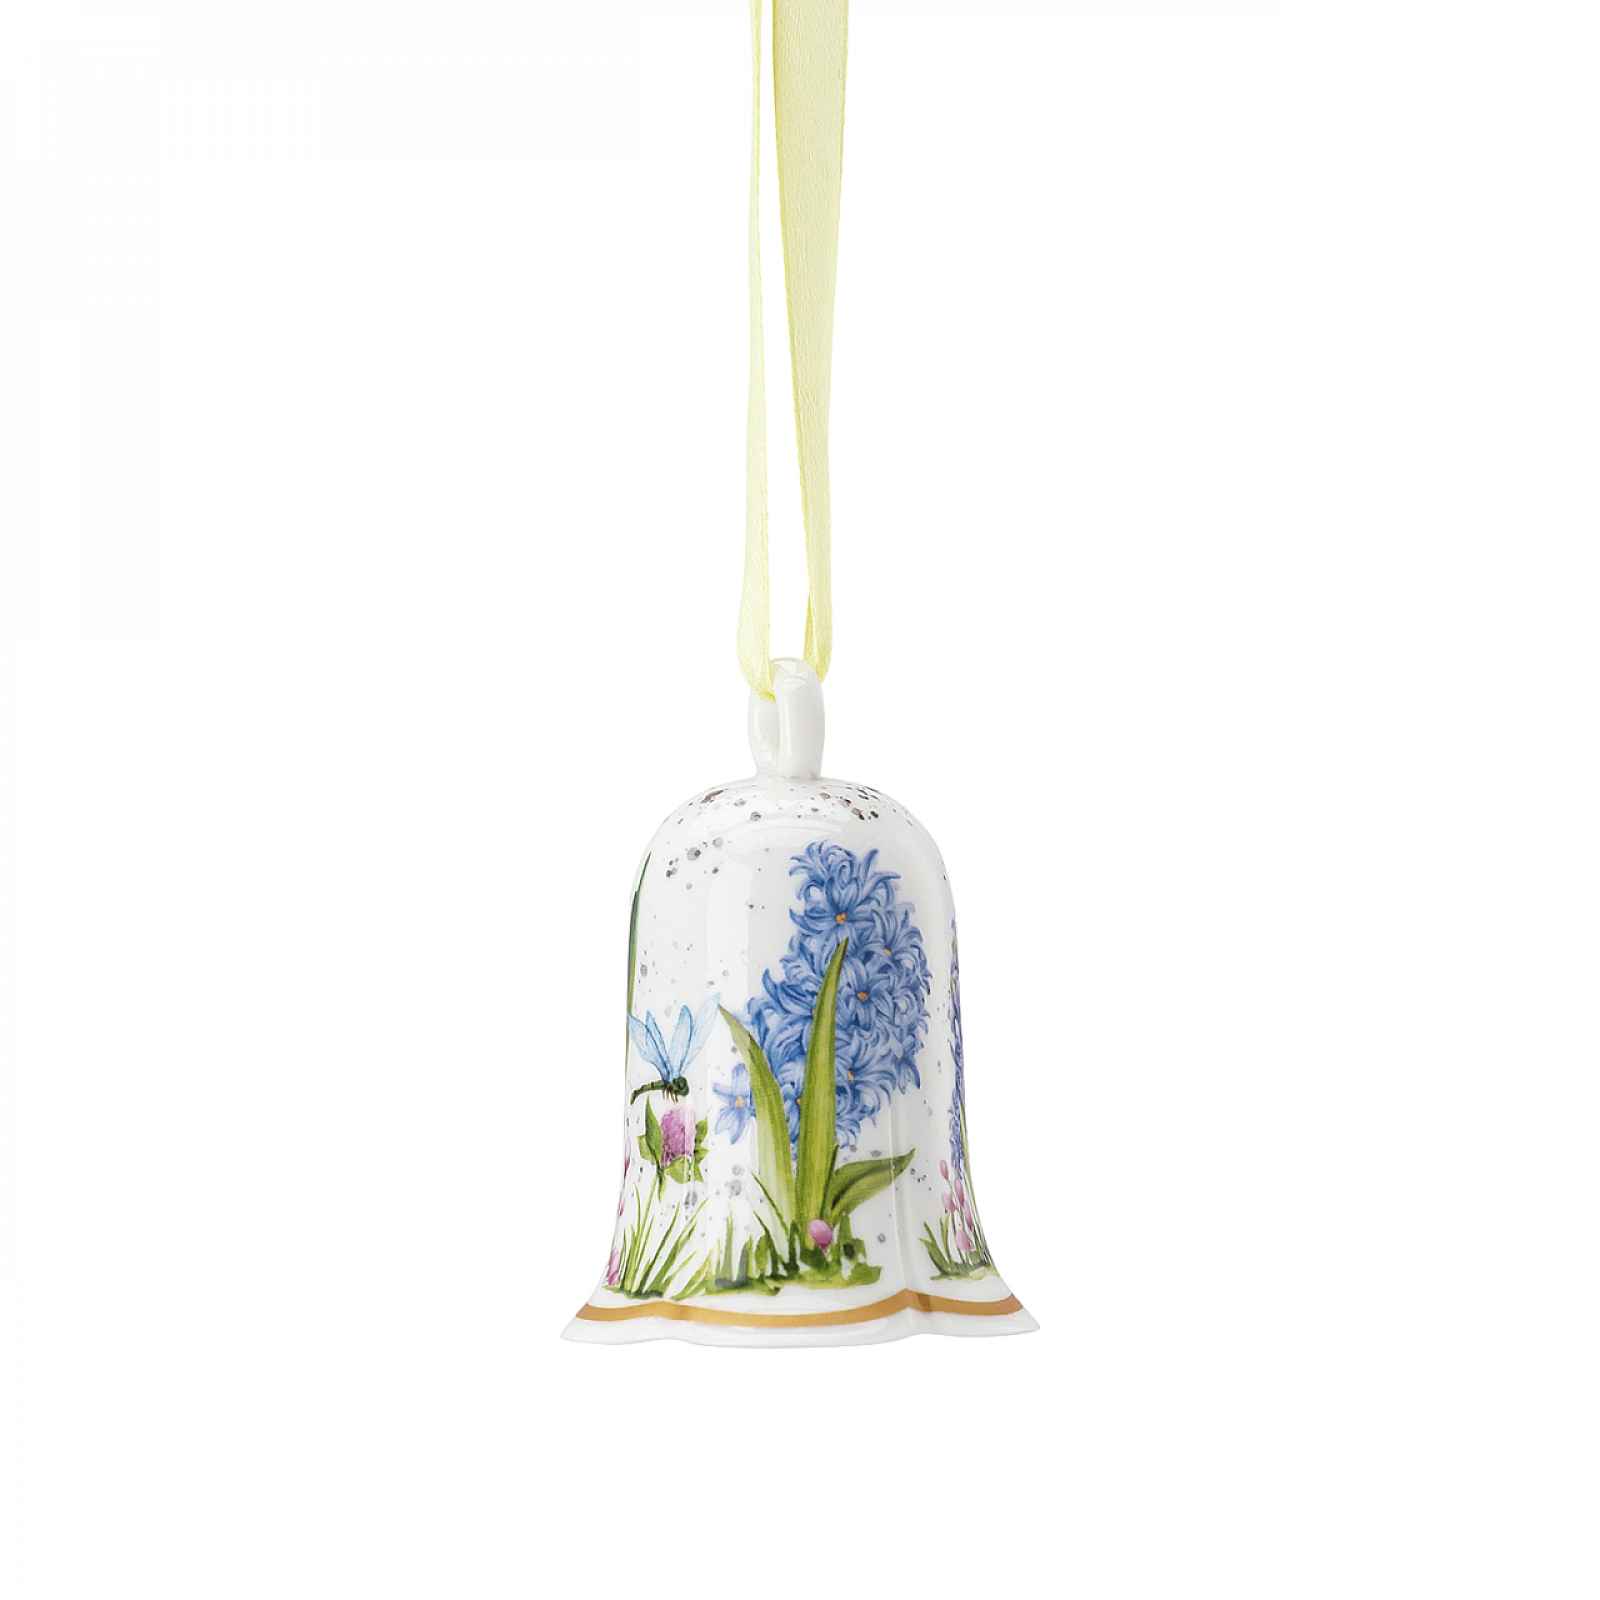 Rosenthal Velikonoční porcelánová závěsná dekorace zvonek "Jarní vůně", 7,2 cm 02311-726050-27955